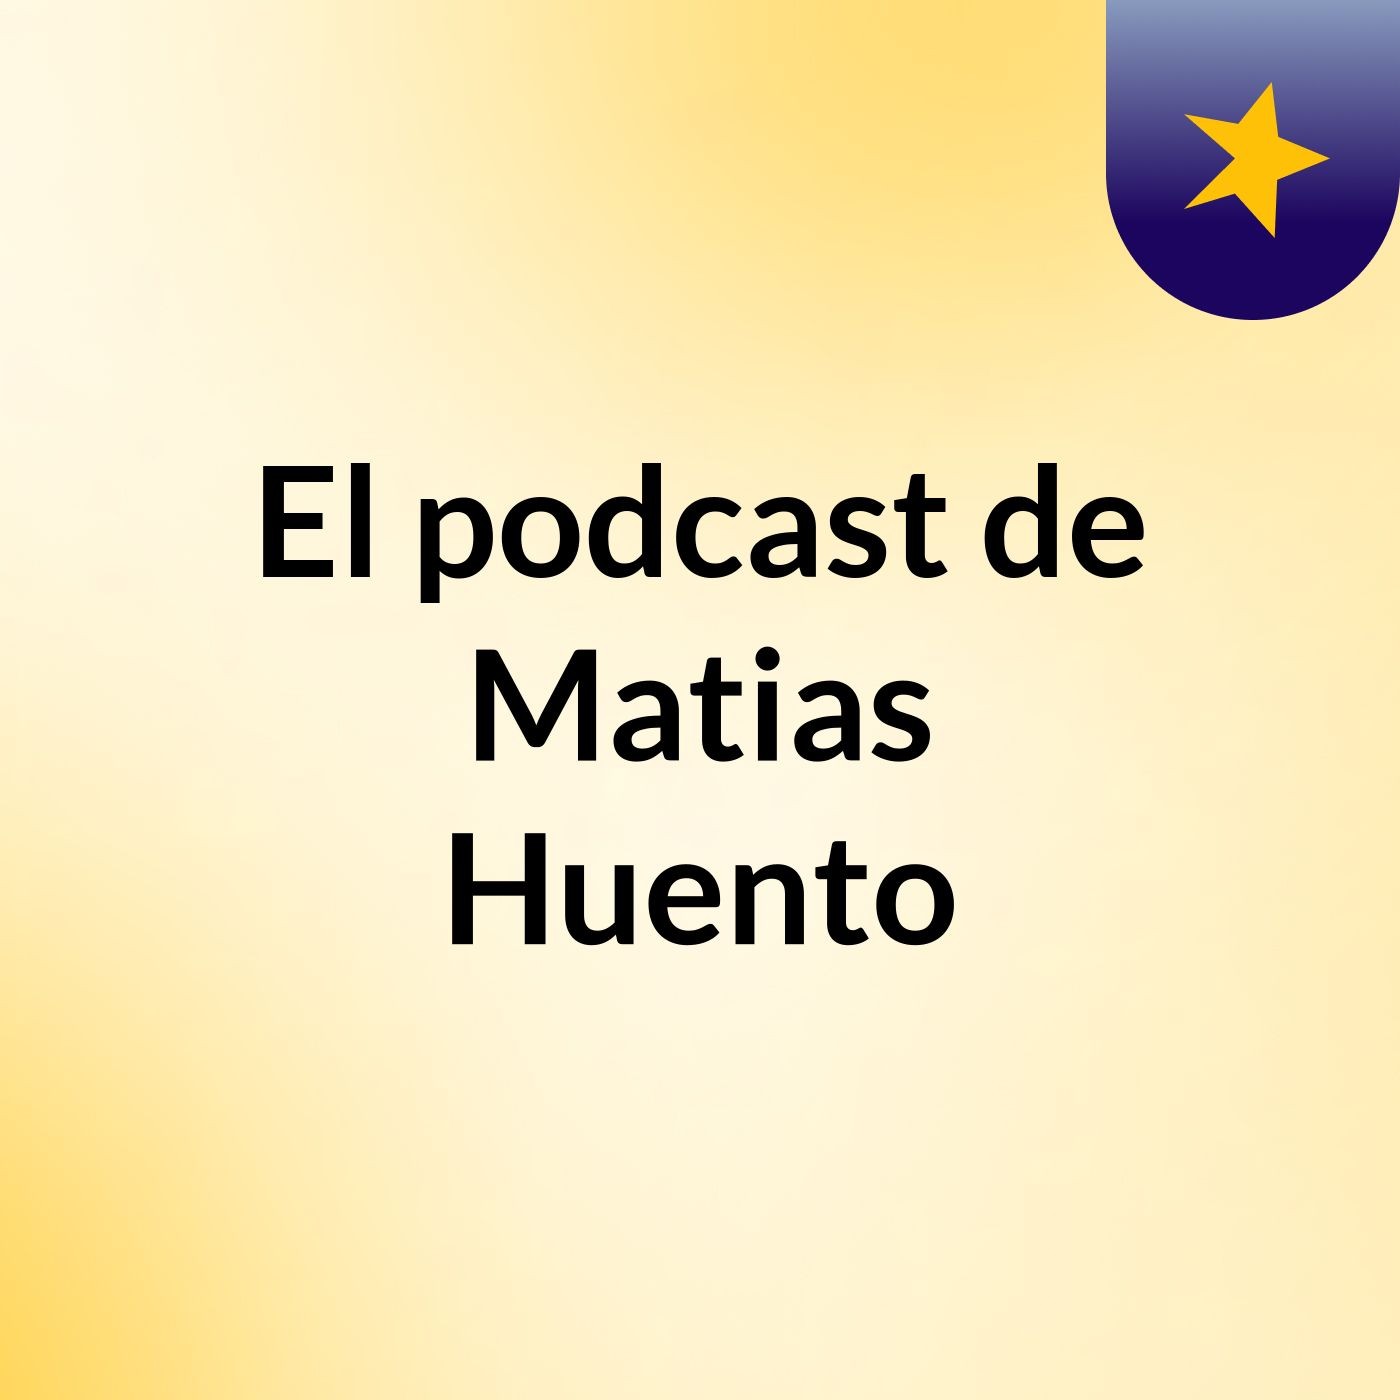 El podcast de Matias Huento